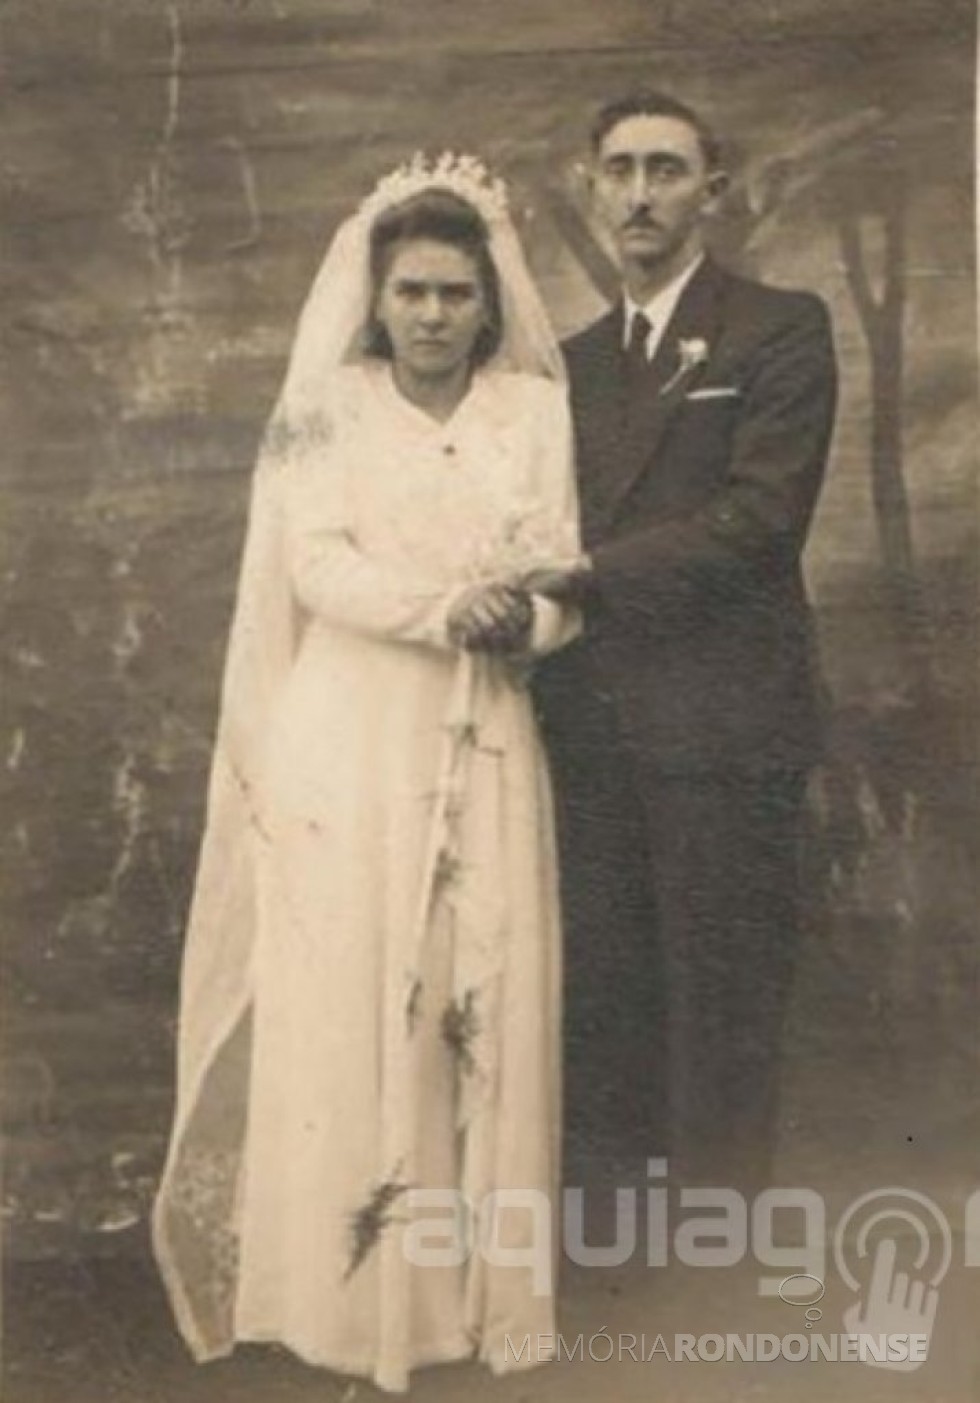 Noivos Irma Selvina Diesel e Nivo Dickel, casal pioneiro rondonense, que se casaram em maio de 1948. 
Imagem: Acervo AquiAgora.net - FOTO 1 - 